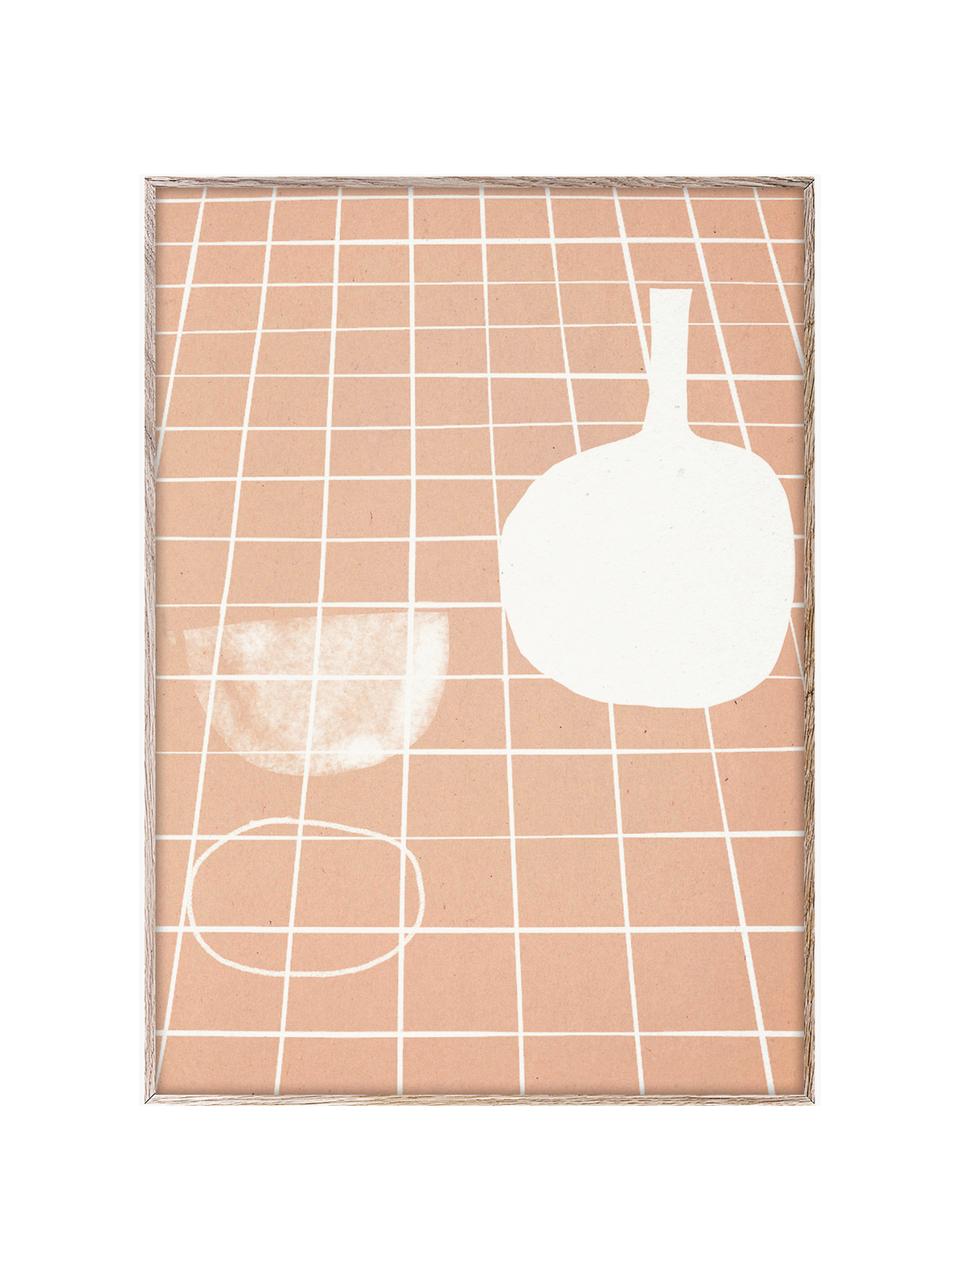 Poster SDO 07, 210 g de papier mat de la marque Hahnemühle, impression numérique avec 10 couleurs résistantes aux UV, Abricot, blanc cassé, larg. 30 x haut. 40 cm